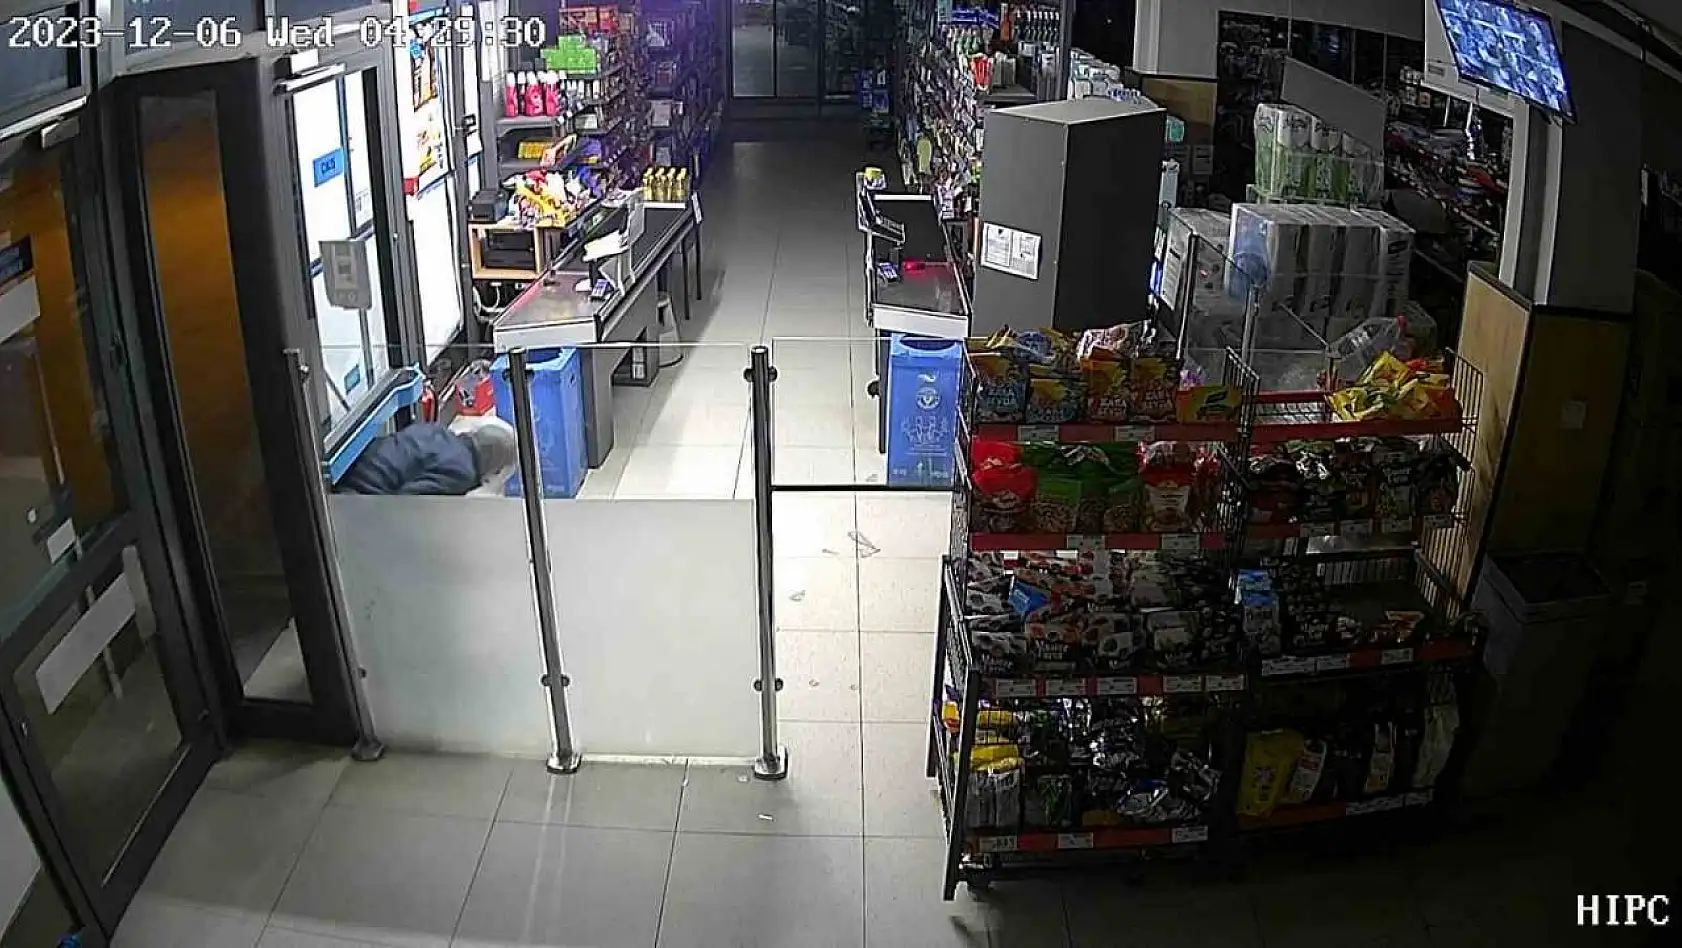 Marketten gıda ürünleri ve sigara çalan kişi güvenlik kameralarına yansıdı